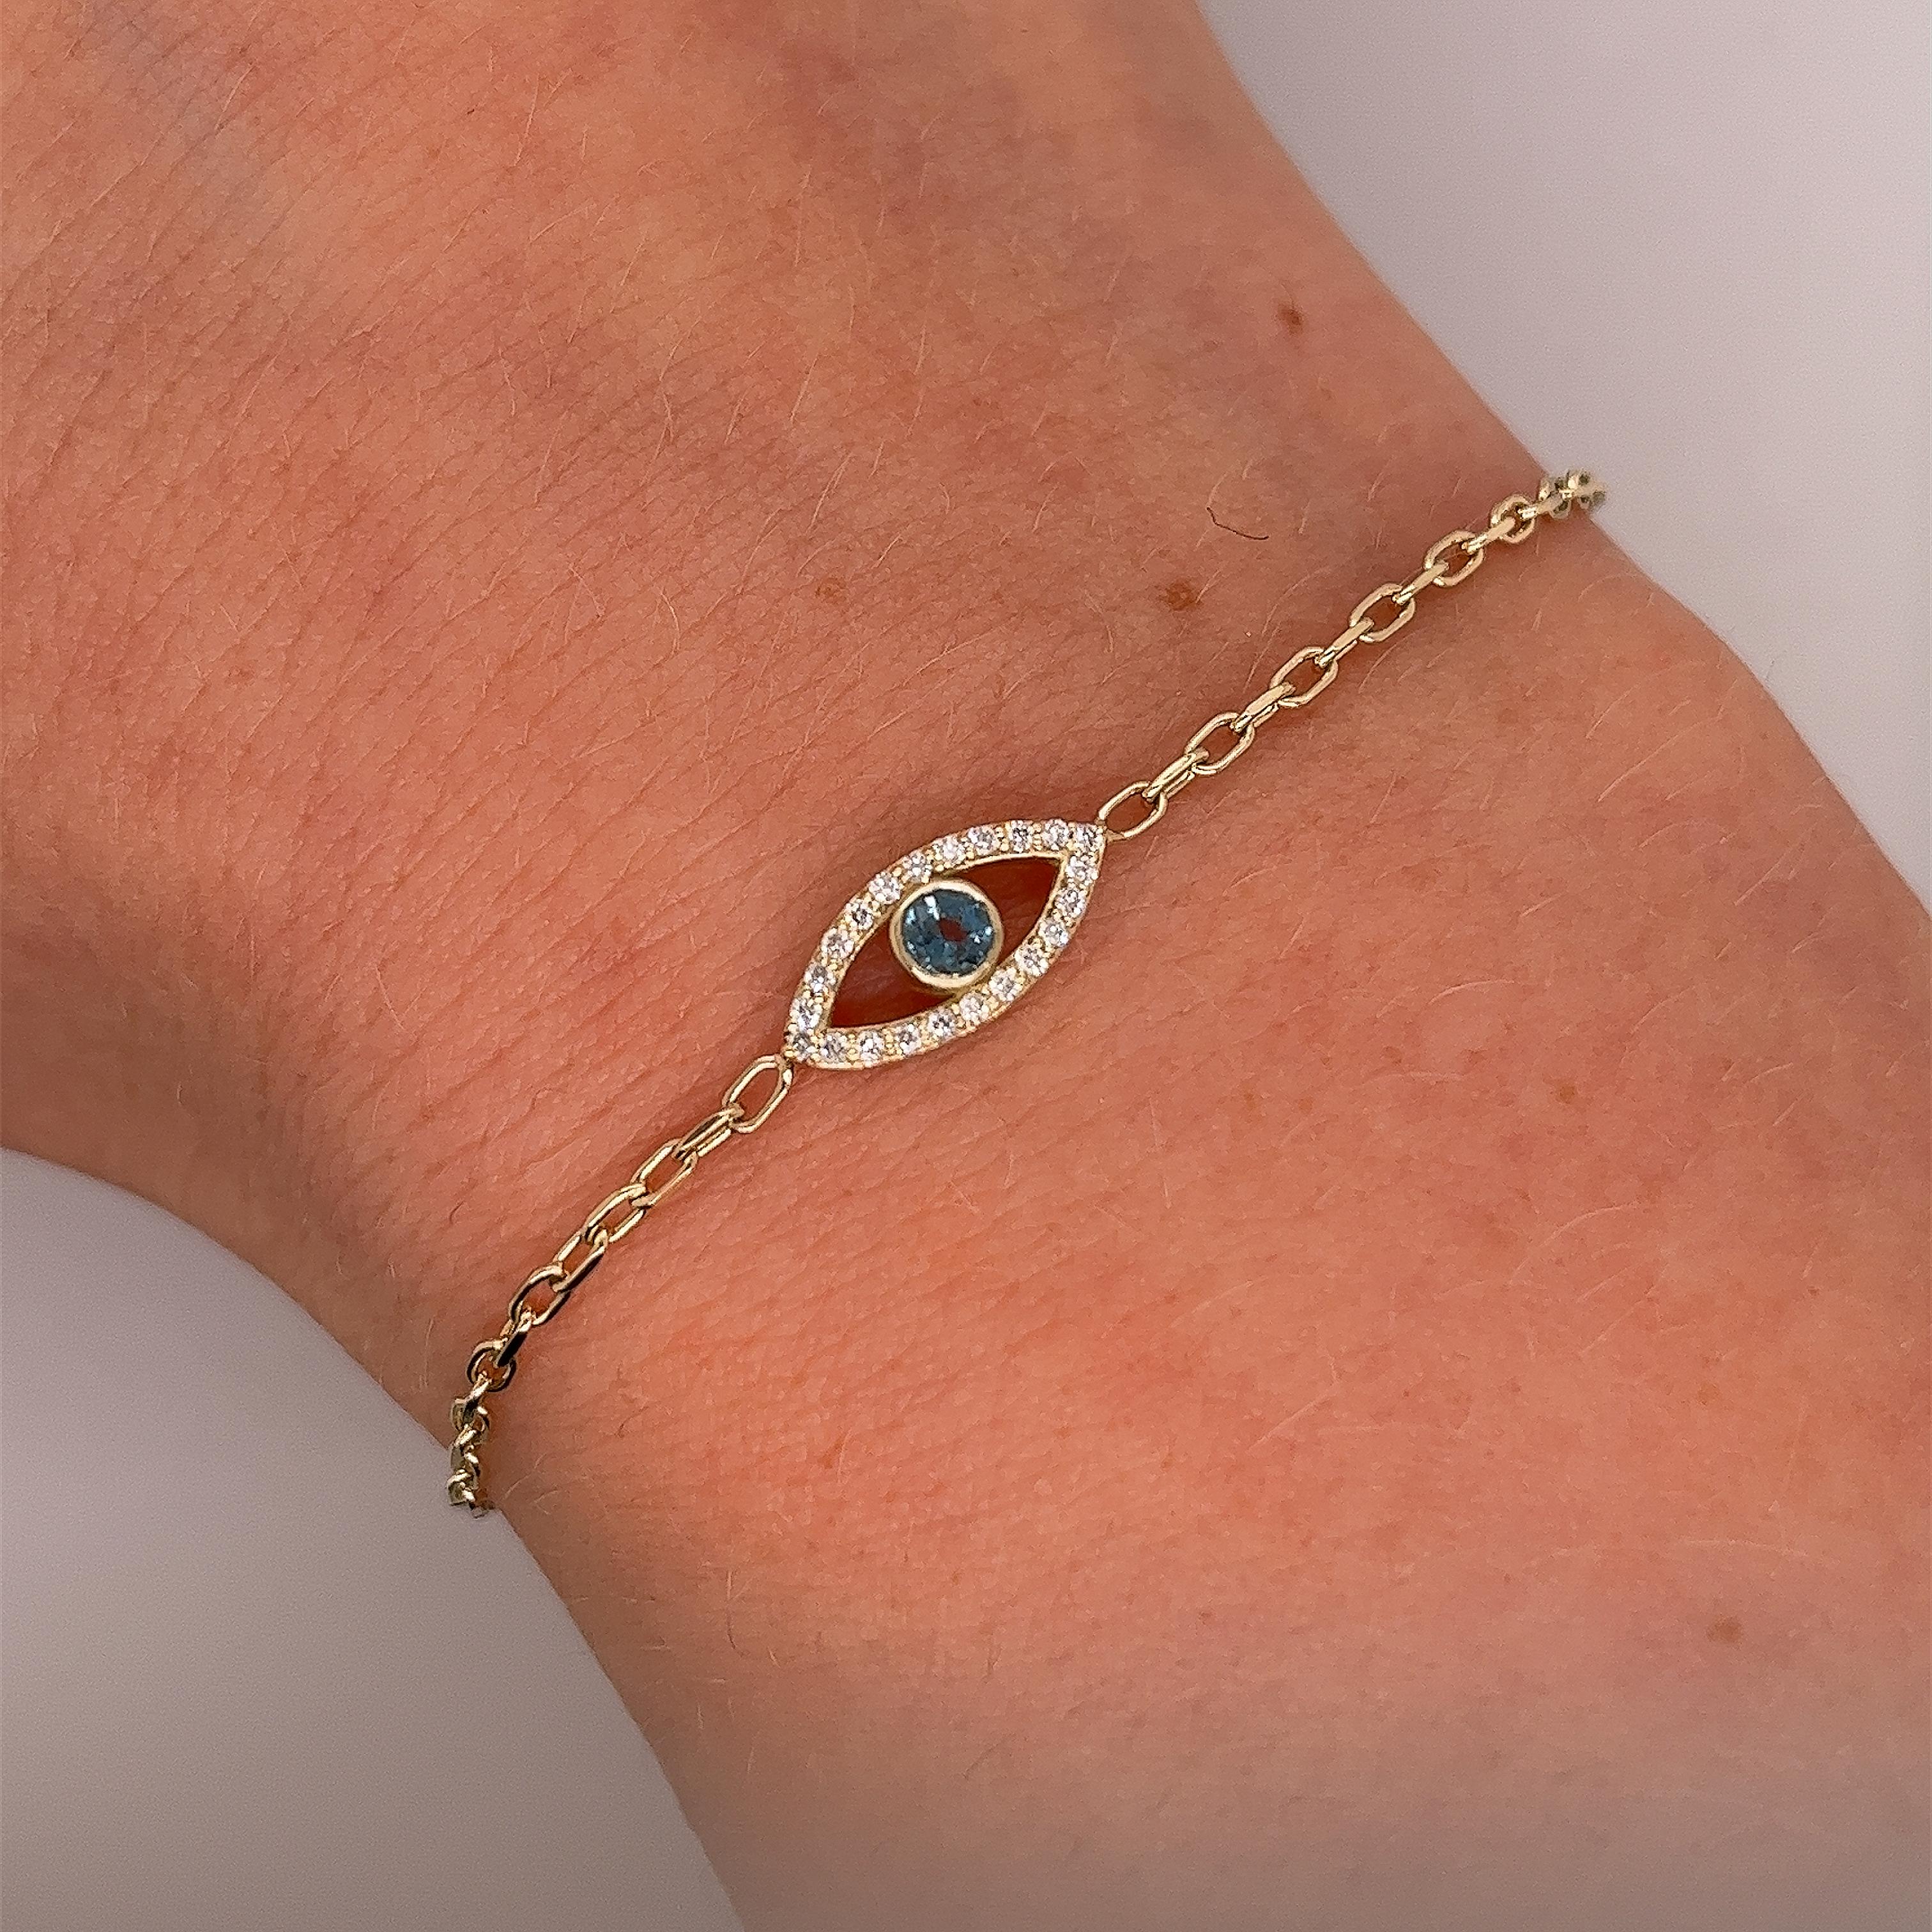 
Made by Jewellery Cave - unser exquisites Armband mit 0,08 Karat Diamanten und rundem Blautopas als böses Auge - eine bezaubernde Verschmelzung von Stil und Symbolik. 
Das Herzstück dieses faszinierenden Armbands aus 9 Karat Gelbgold ist der